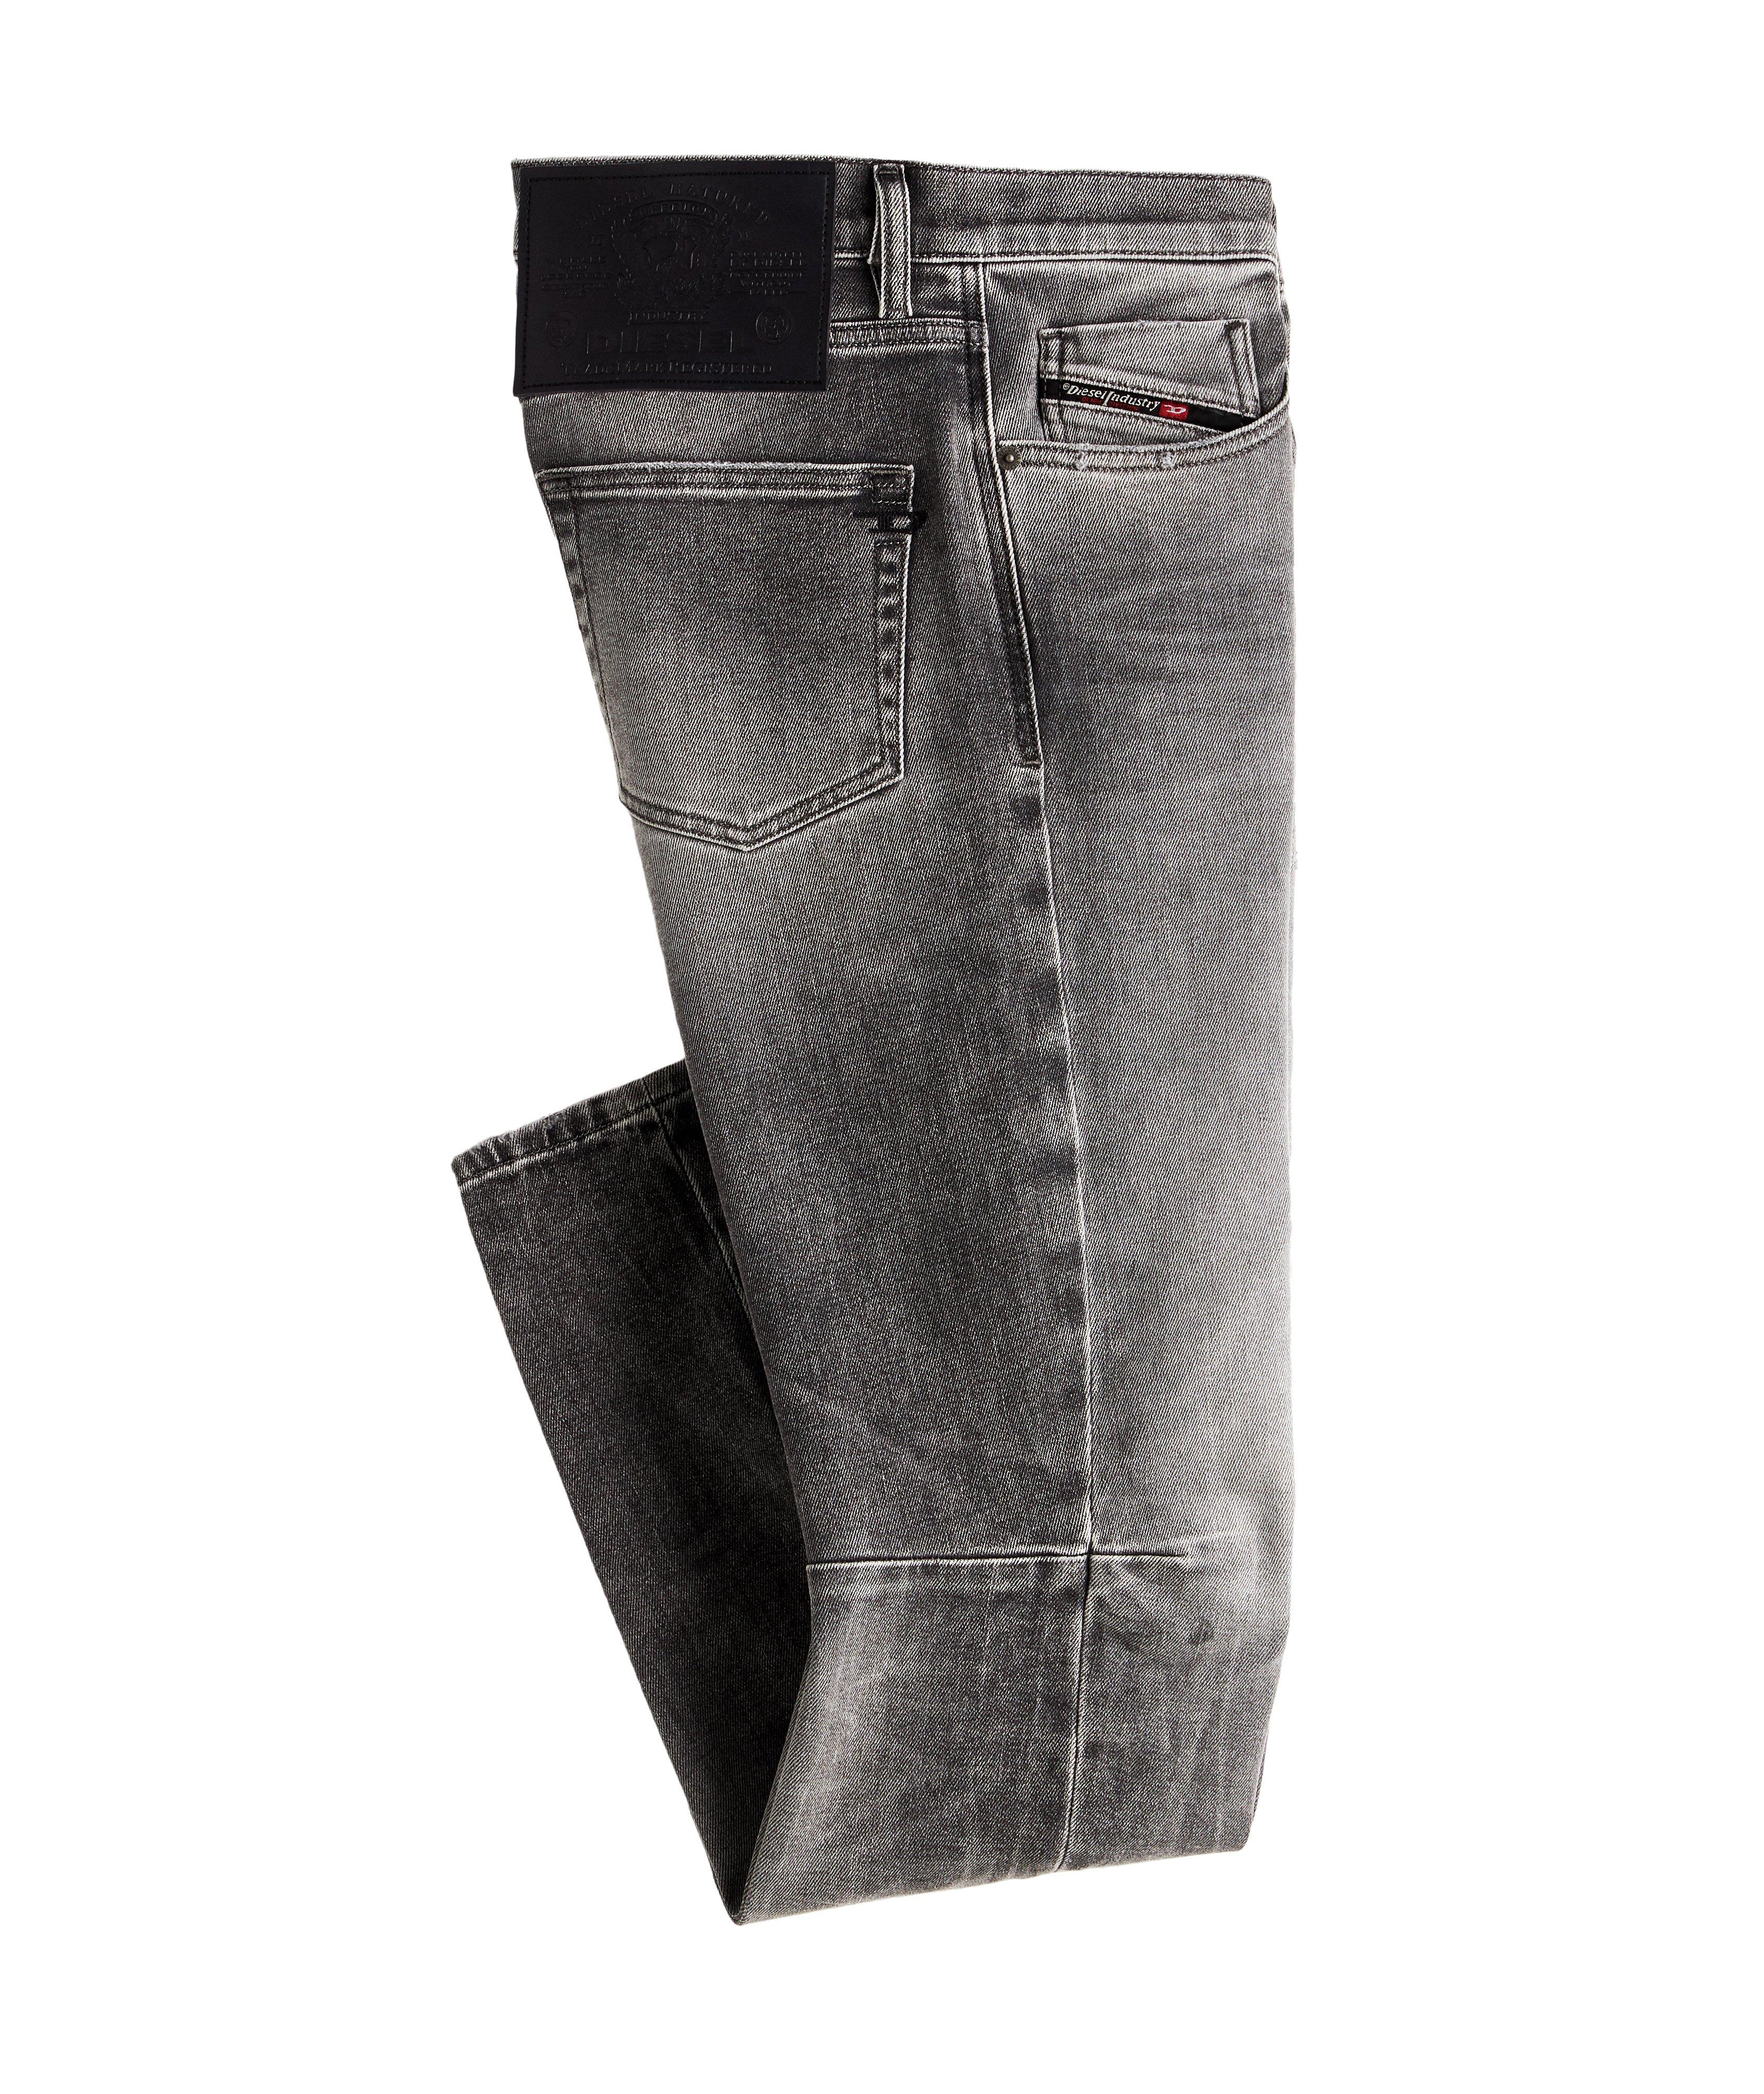 D-Strukt Slim Fit Stretch Jeans image 0